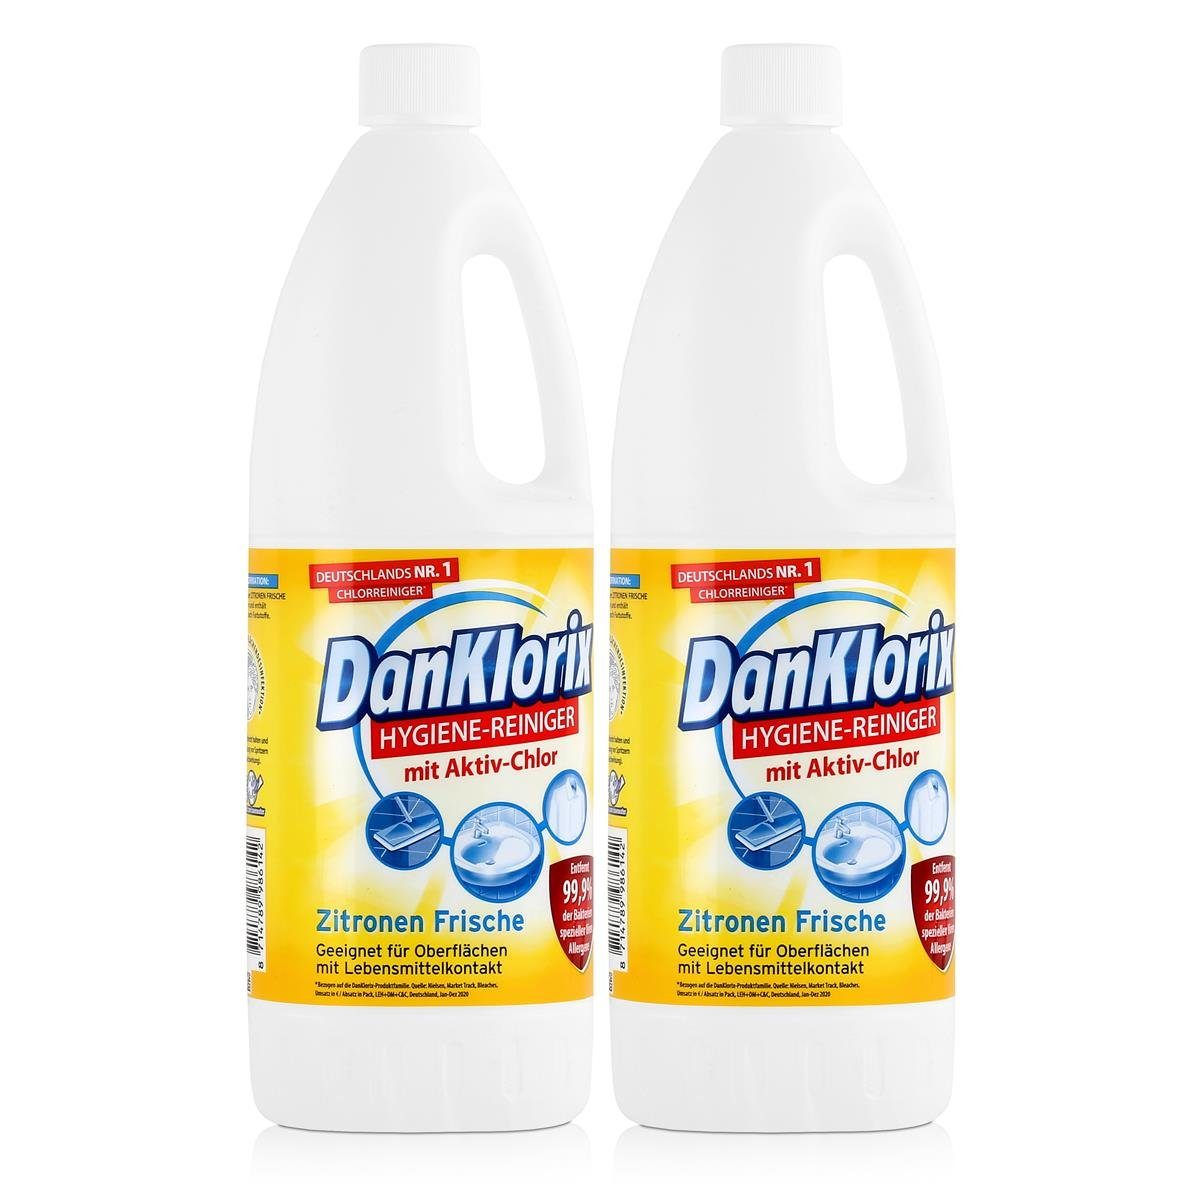 Aktiv-Chlor Zitronen WC-Reiniger 1,5L Hygiene-Reiniger (2e DanKlorix Mit - Frische DanKlorix